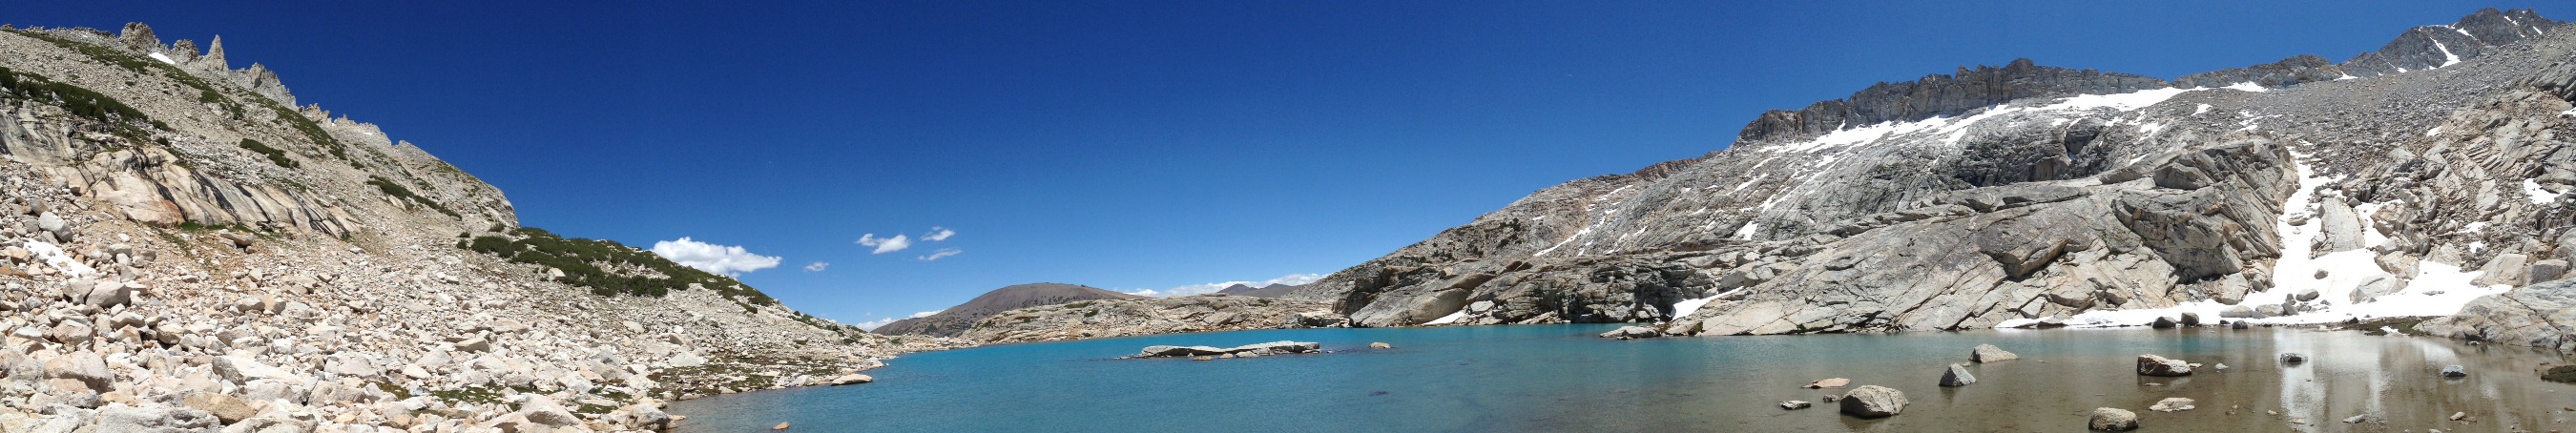 North Peak, Lake #5, Conness Glacier